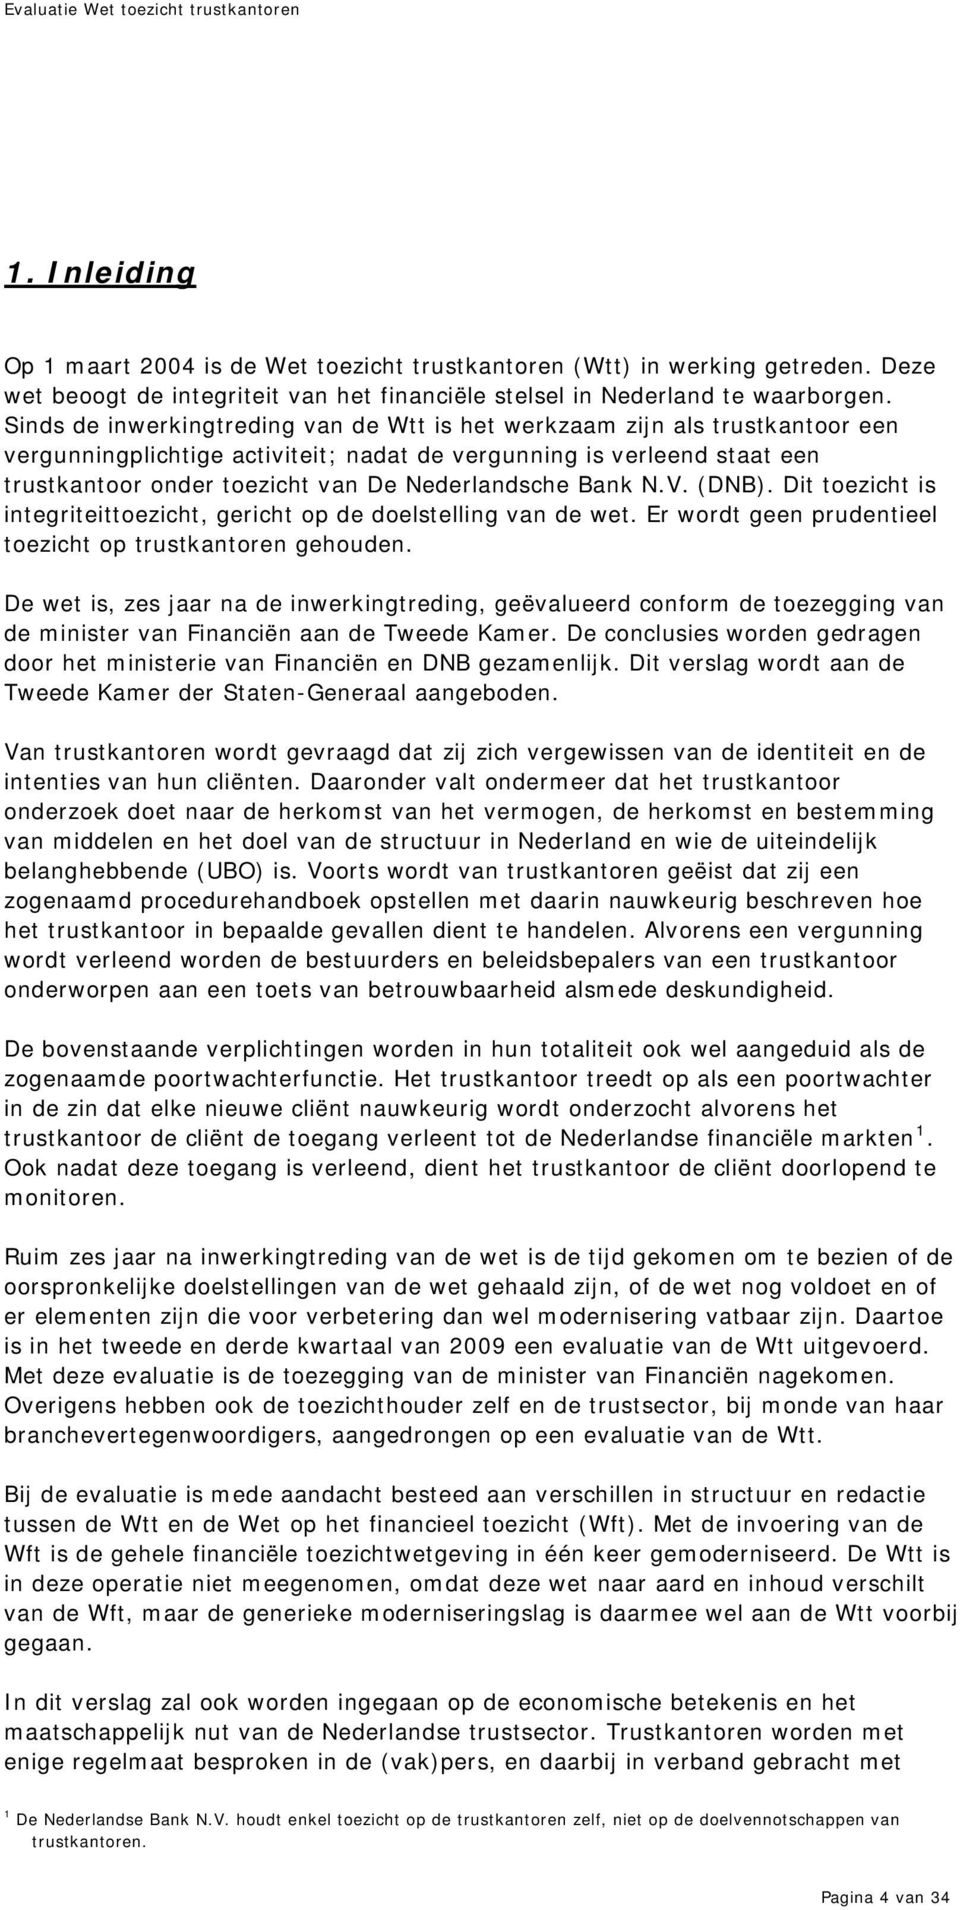 Nederlandsche Bank N.V. (DNB). Dit toezicht is integriteittoezicht, gericht op de doelstelling van de wet. Er wordt geen prudentieel toezicht op trustkantoren gehouden.